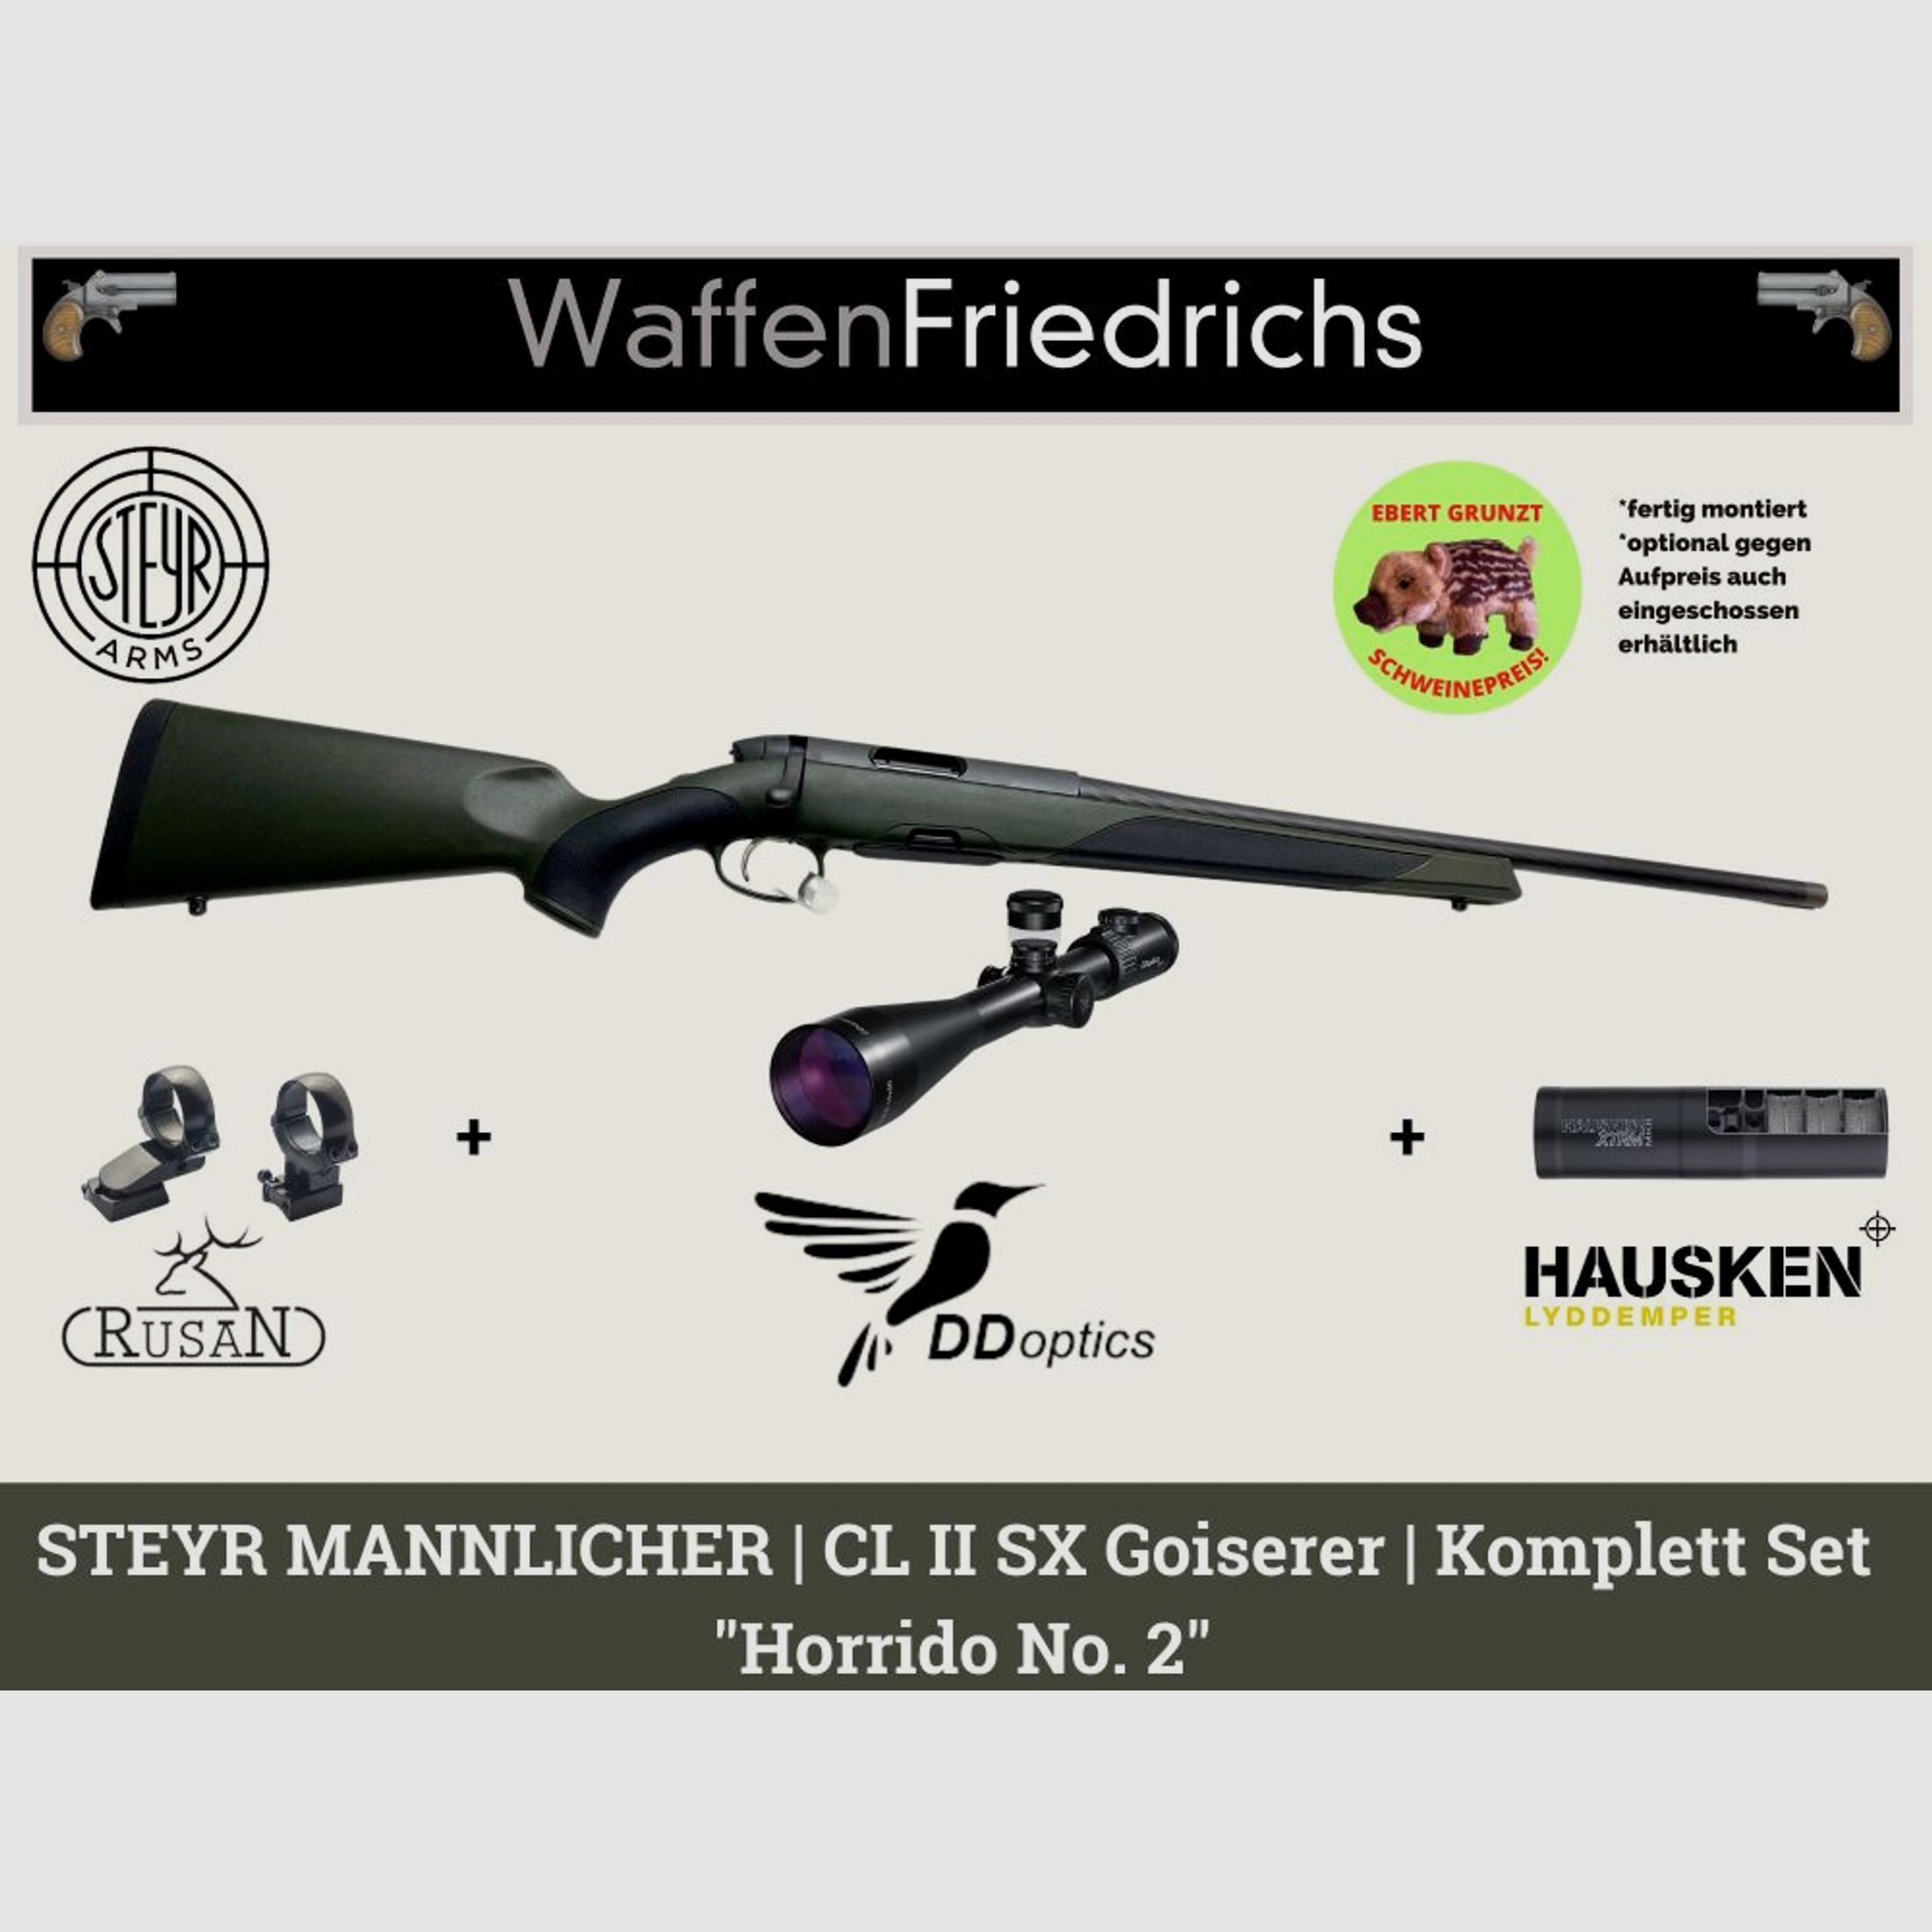 STEYR ARMS	 CL II SX Goiserer "HORRIDO No. 2" - Kaliber zur Auswahl| Komplettangebot Jungjäger - Waffen Friedrichs